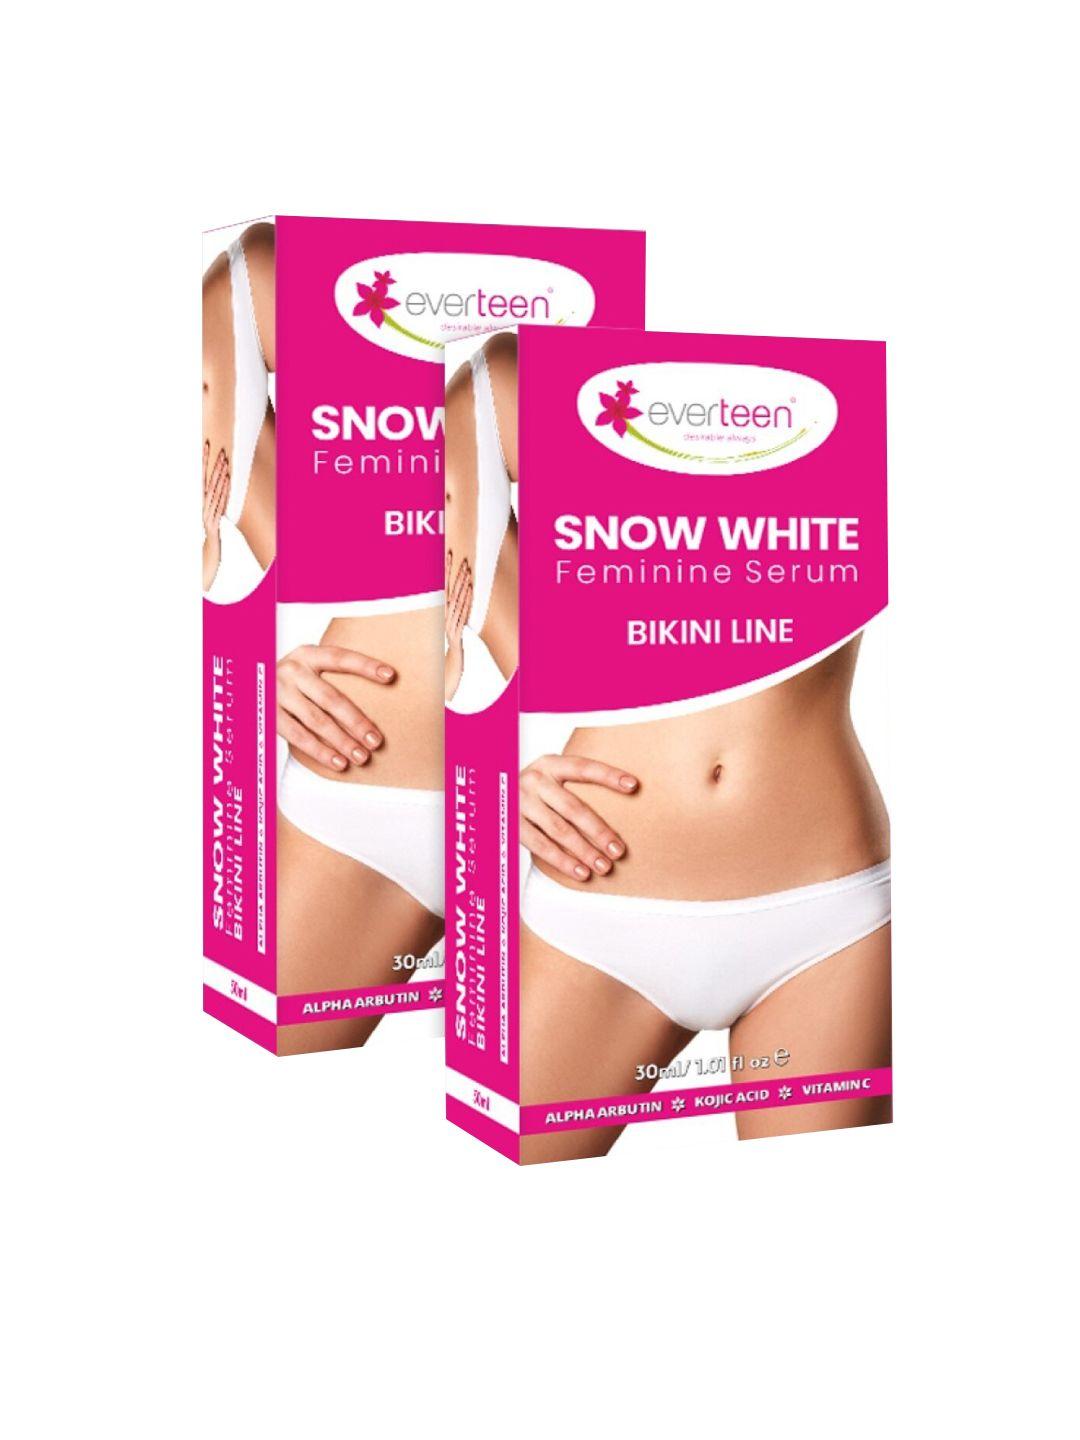 everteen set of 2 snow white feminine serum for bikini line - 30 ml each